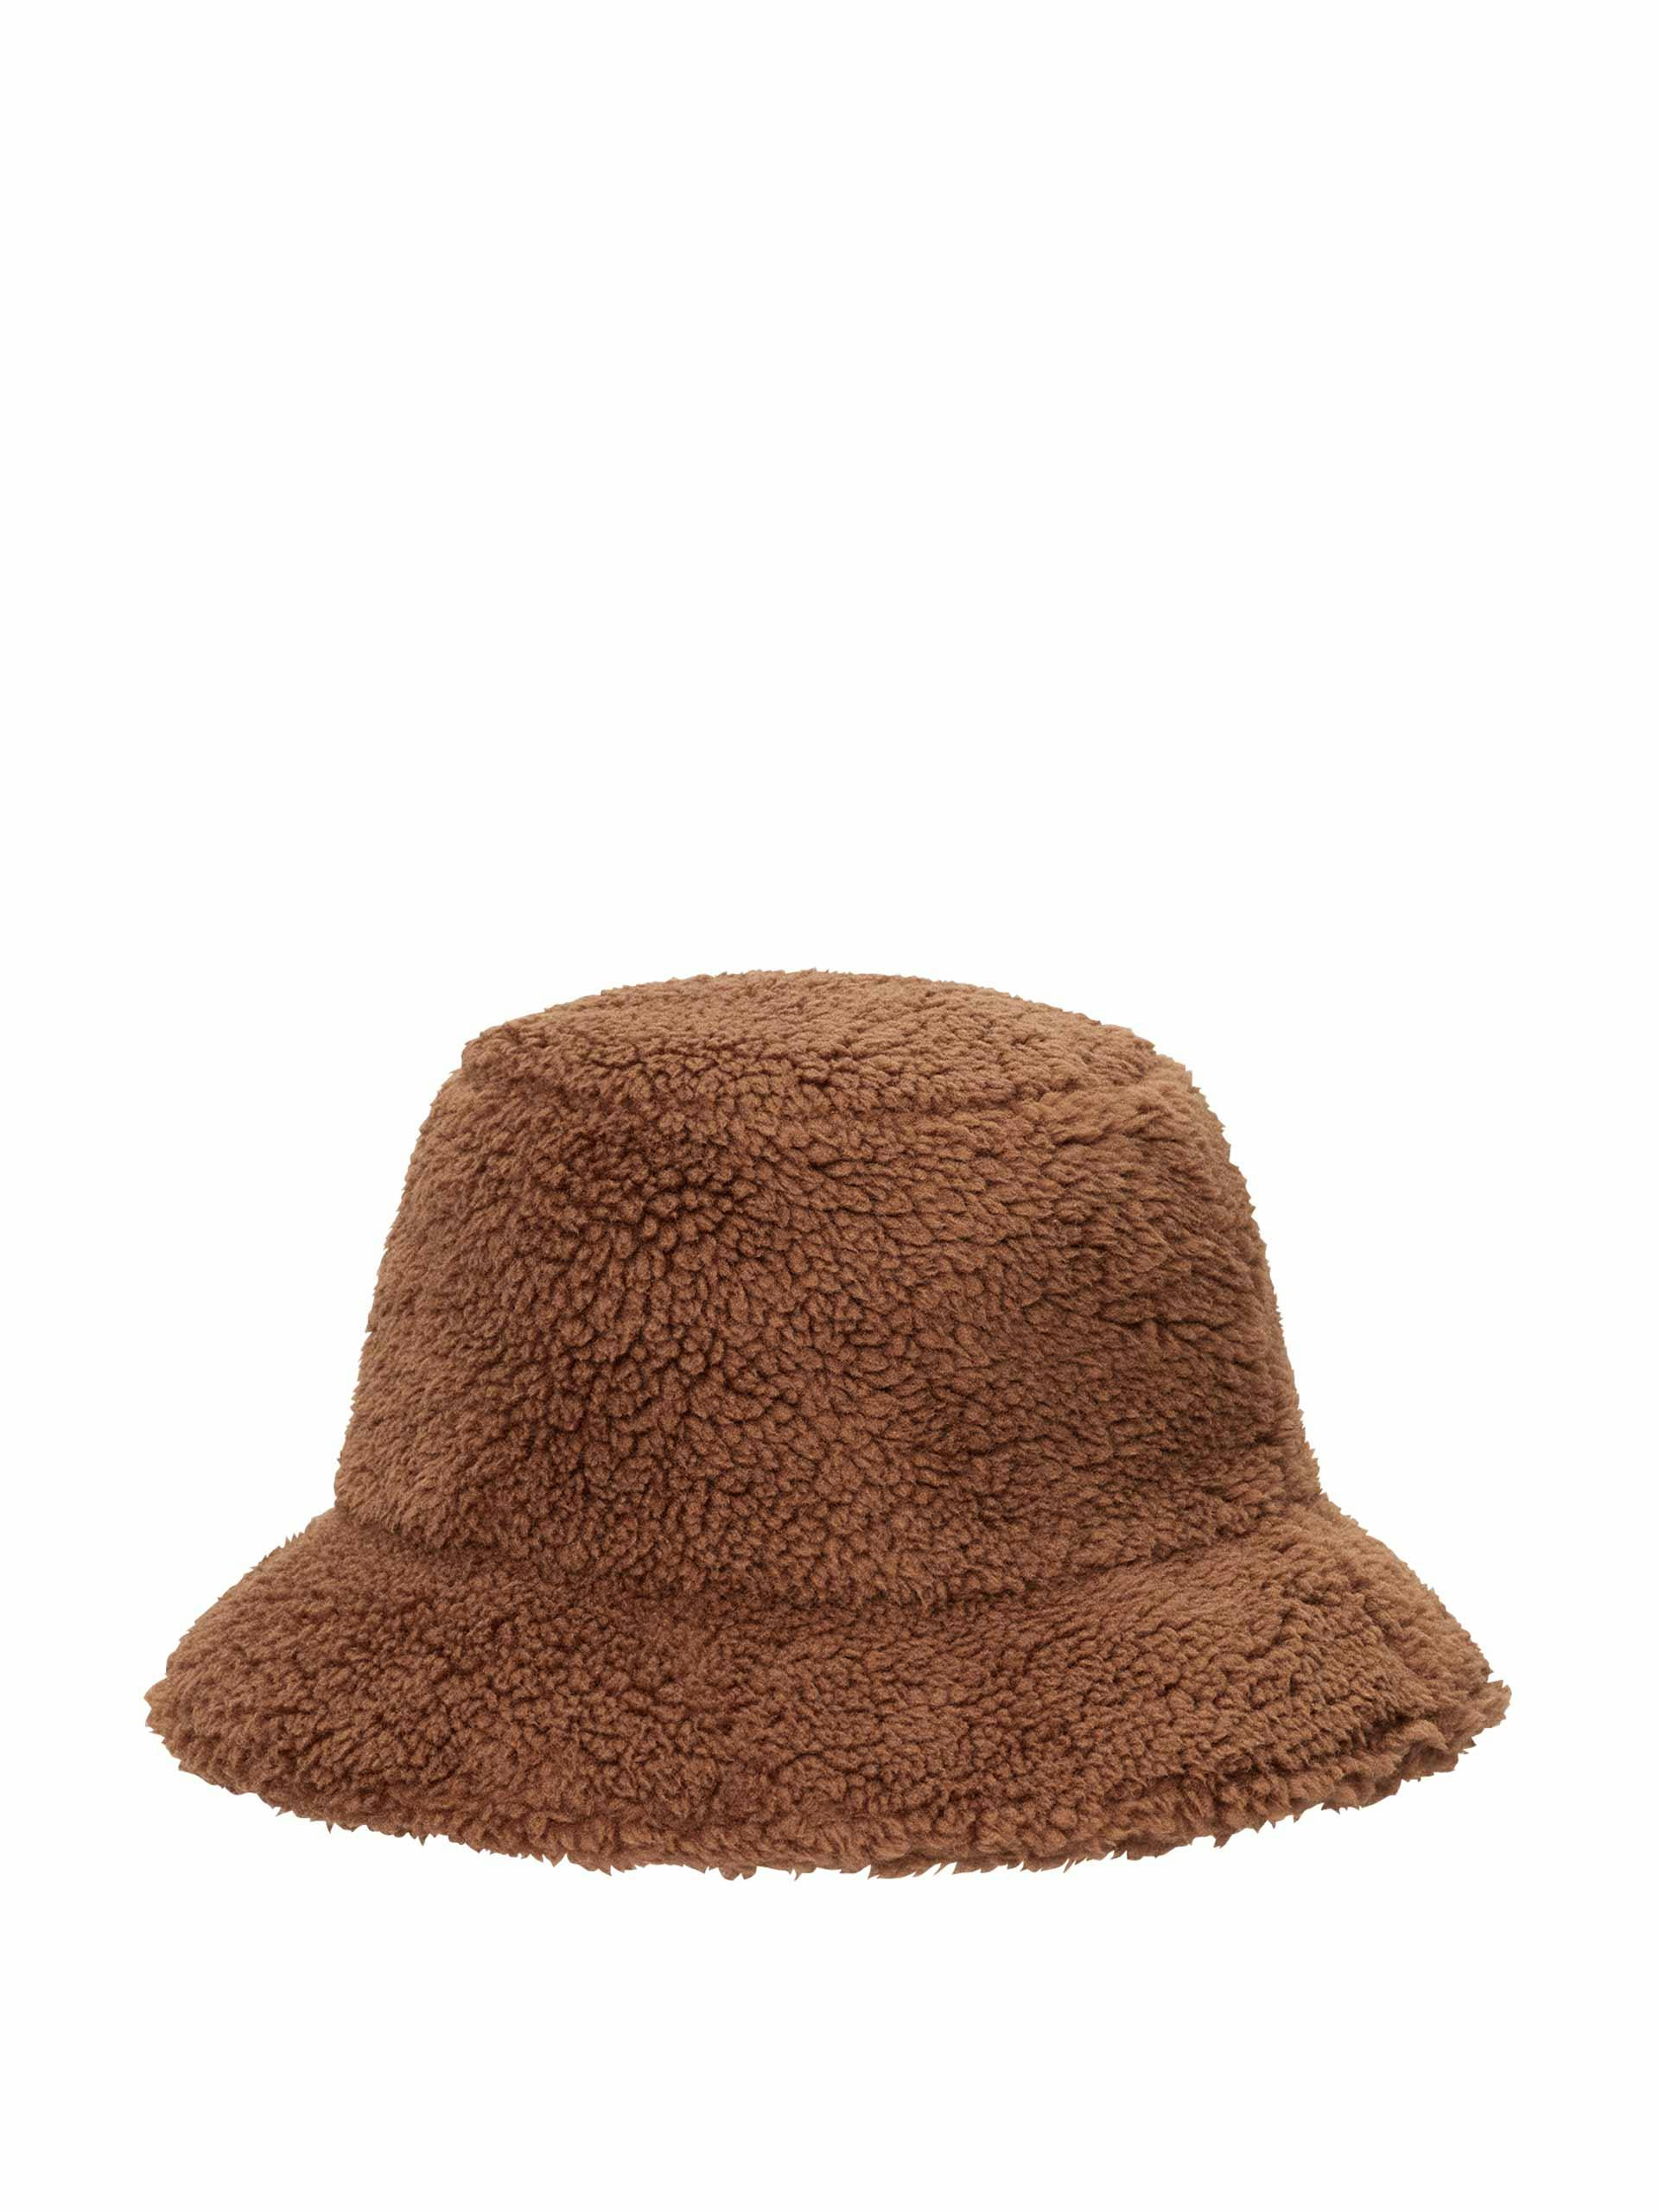 Brown adjustable bucket hat